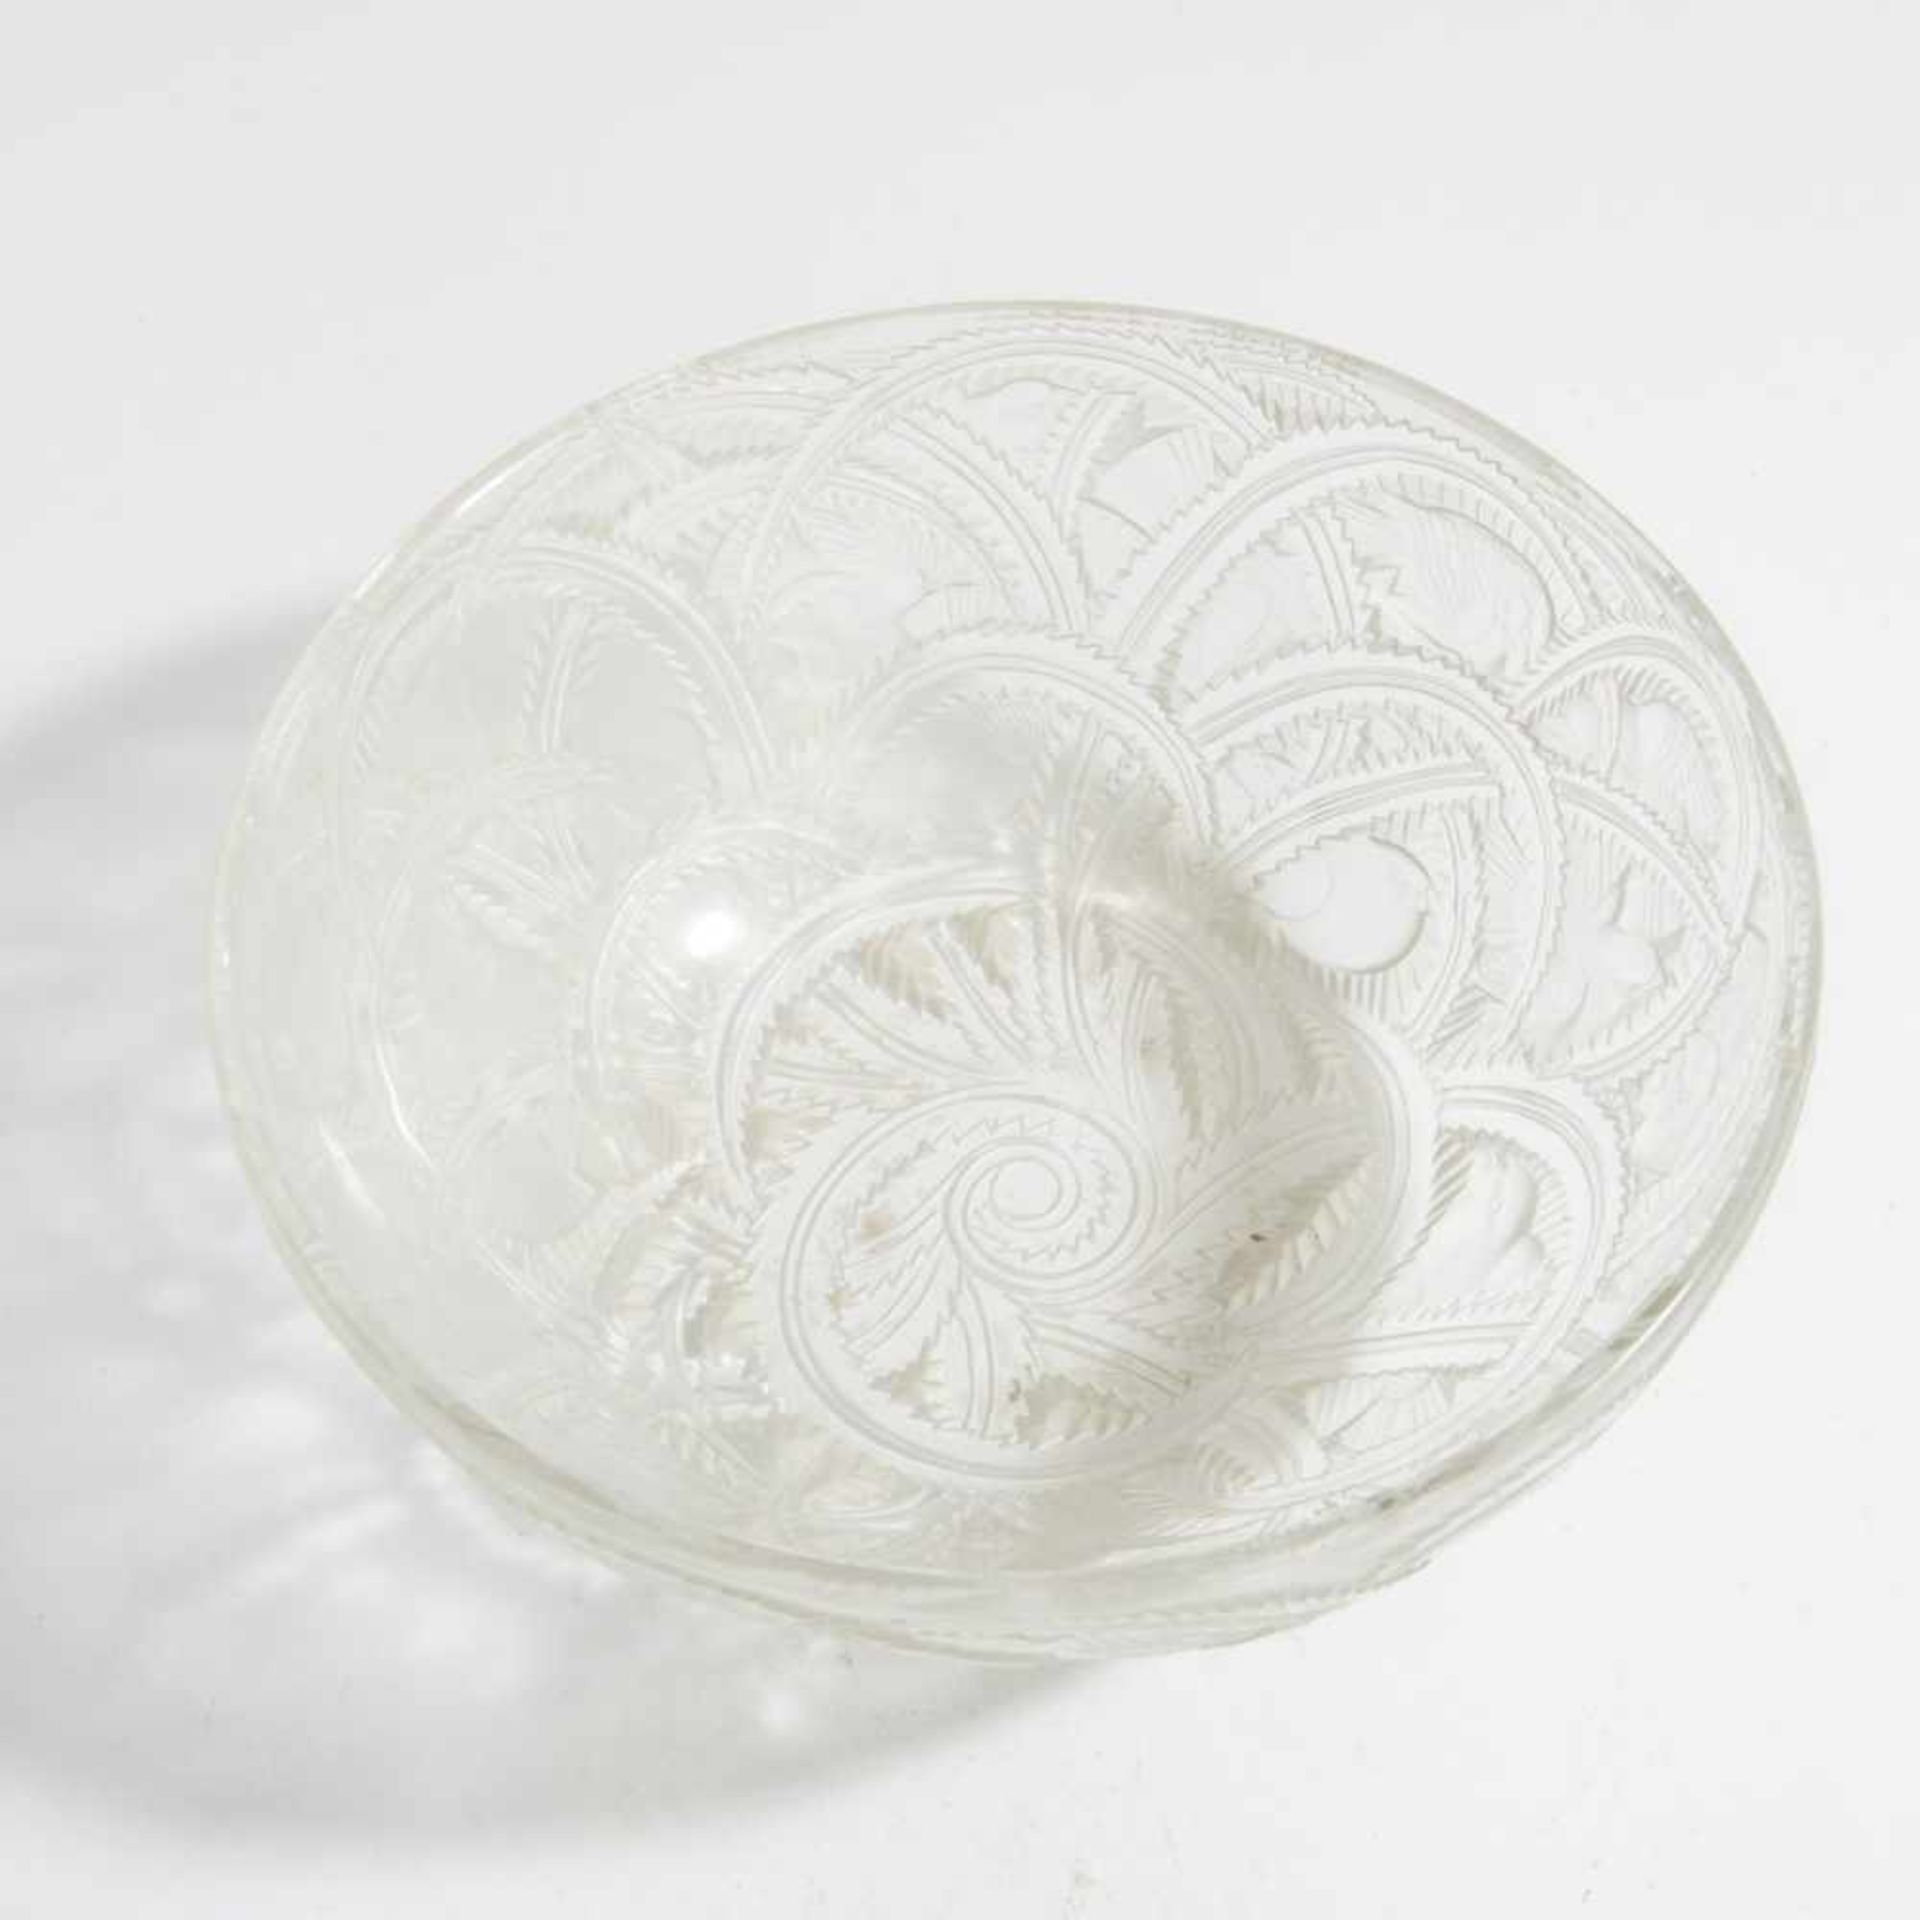 René Lalique, 'Pinsons' bowl, 1933'Pinsons' bowl, 1933H. 9 cm, d. 23.5 cm. Clear moulded glass, - Bild 2 aus 5